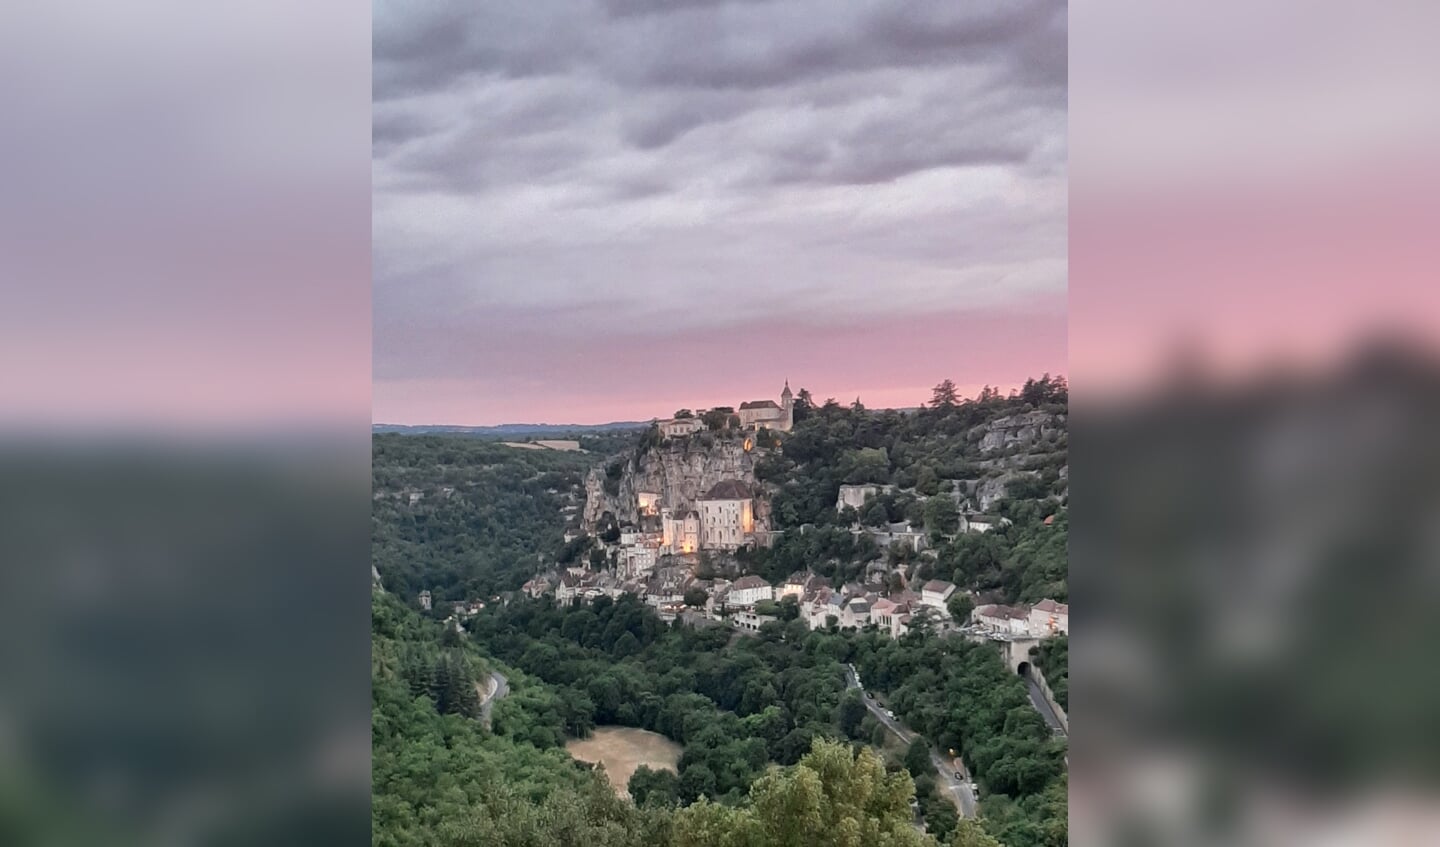 Deze foto is gemaakt in Rocamadour, Frankrijk. 
Als gezin waren we hier voor het eerst. Rocamadour is gebouwd op een rots. Prachtig om in het donker/schemering dit hangende,  verlichte stadje te aanschouwen. De foto is gemaakt op 30 juli 2022 met een telefoon. 